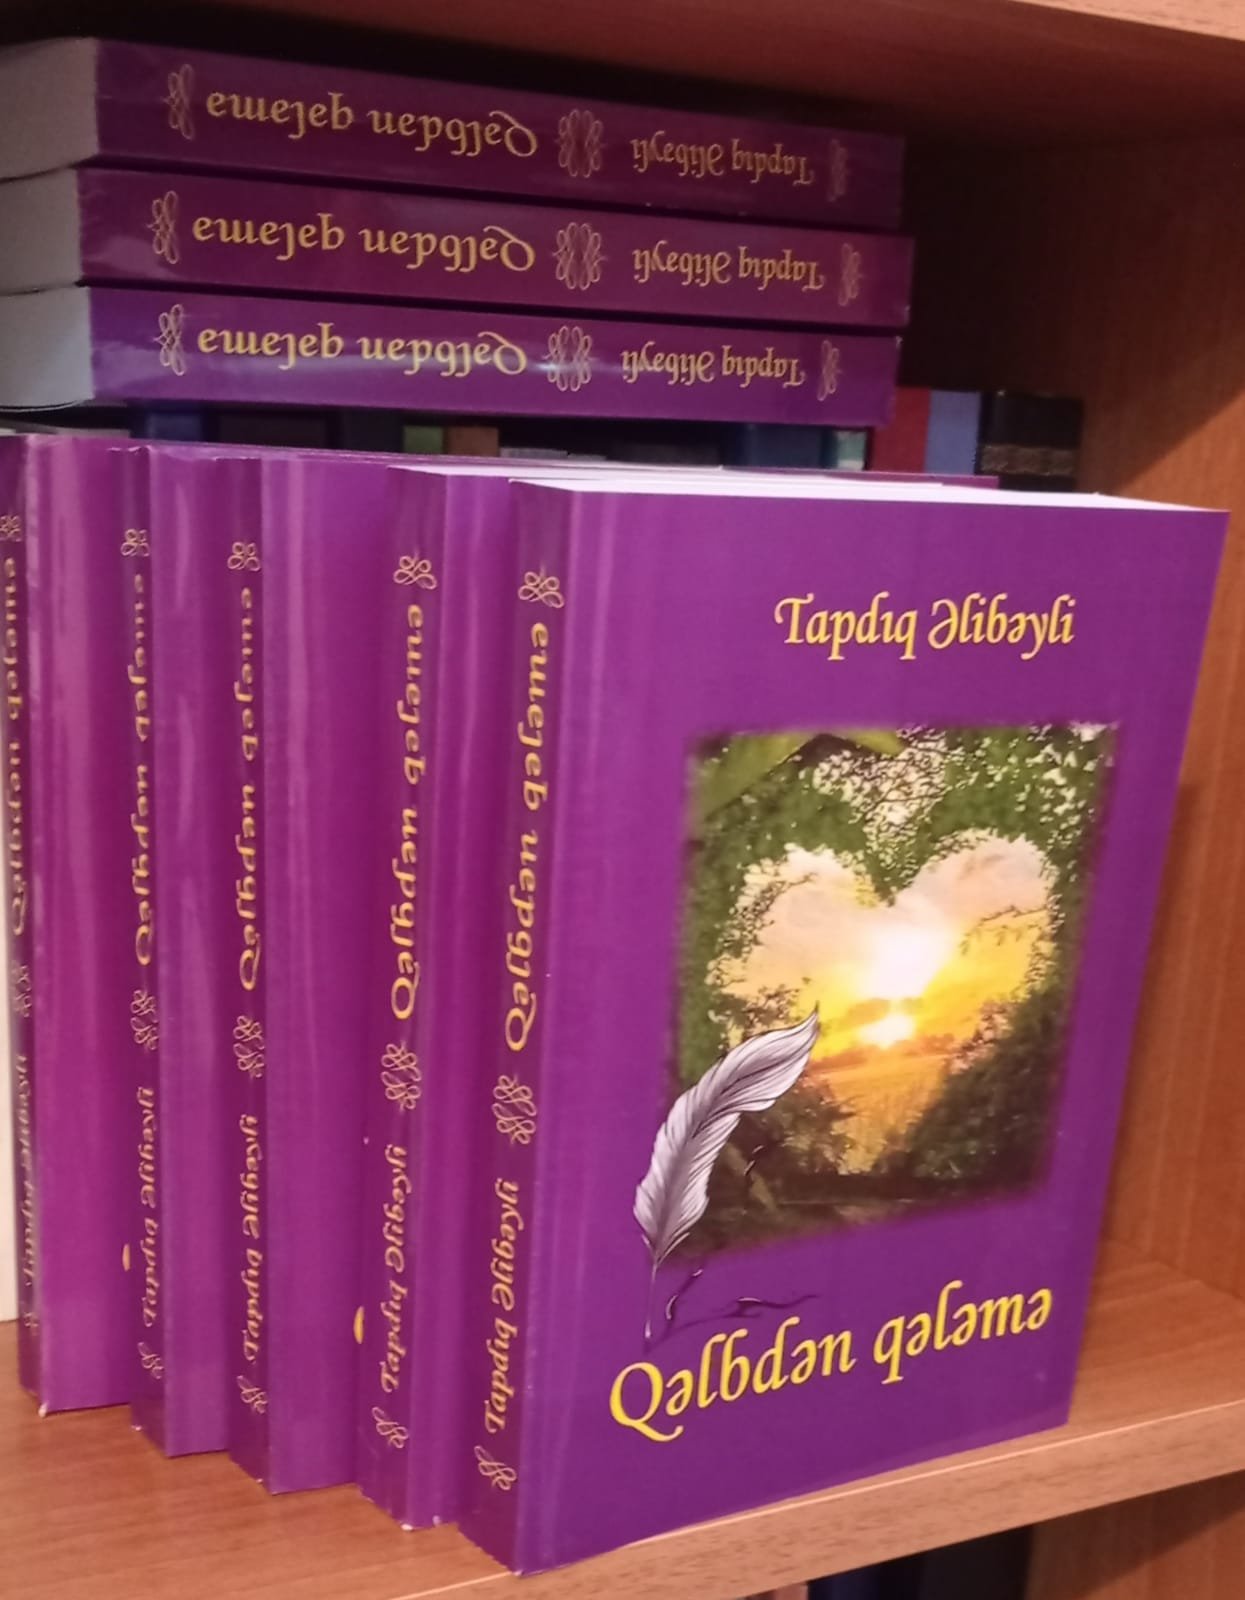 Tapdıq Əlibəyli: "Qəlbdən qələmə"